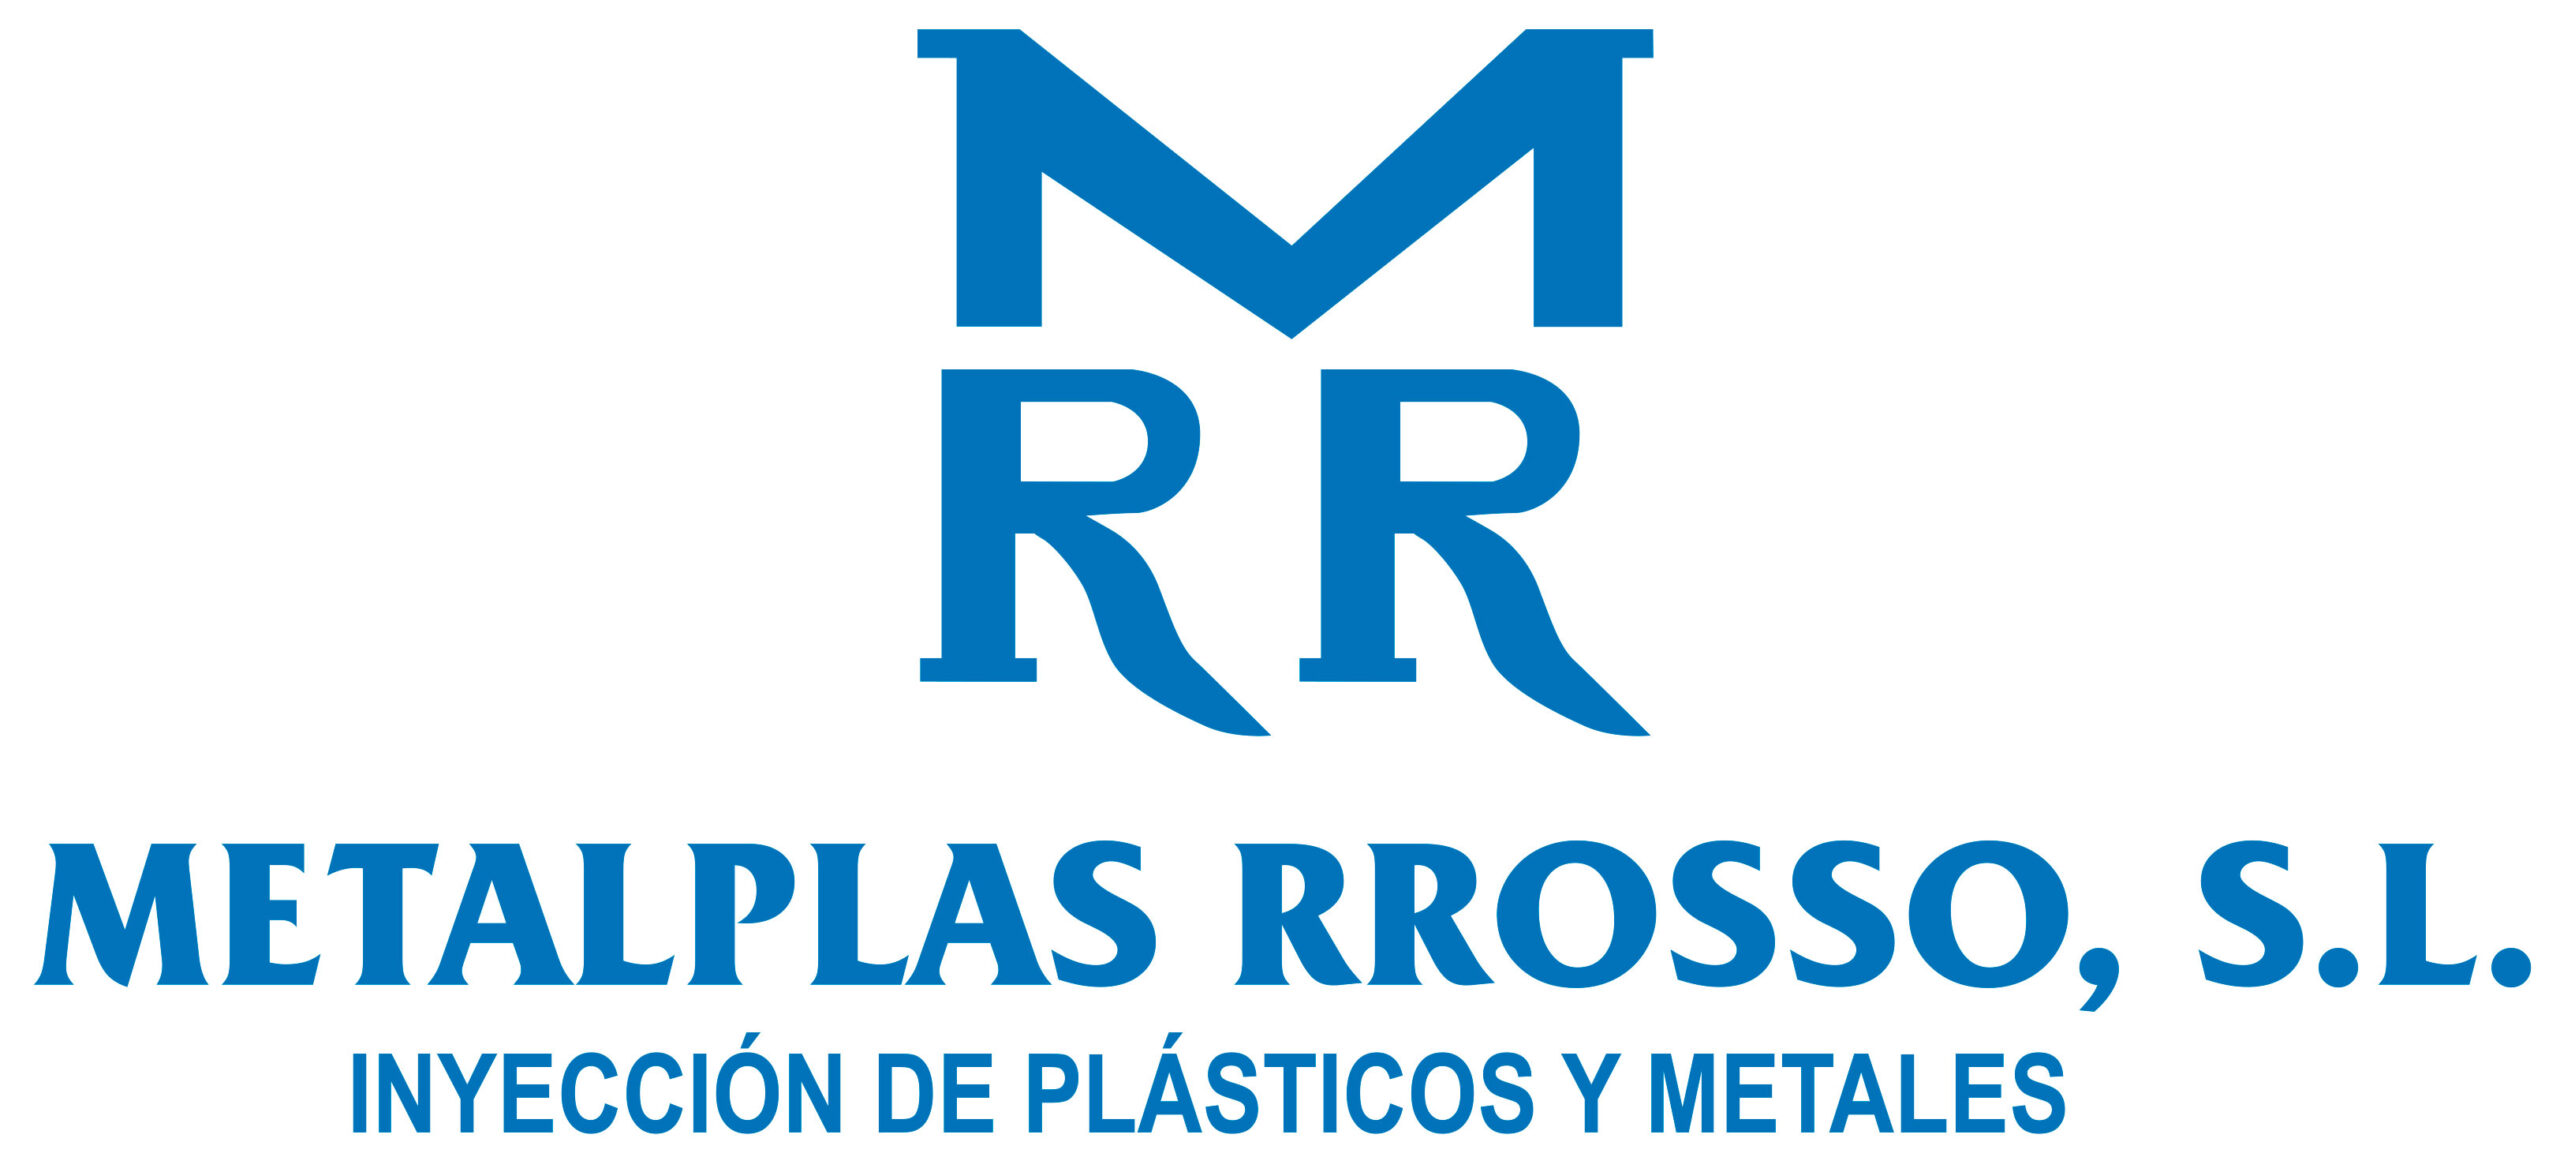 Logo Metalplas Rrosso S.L.